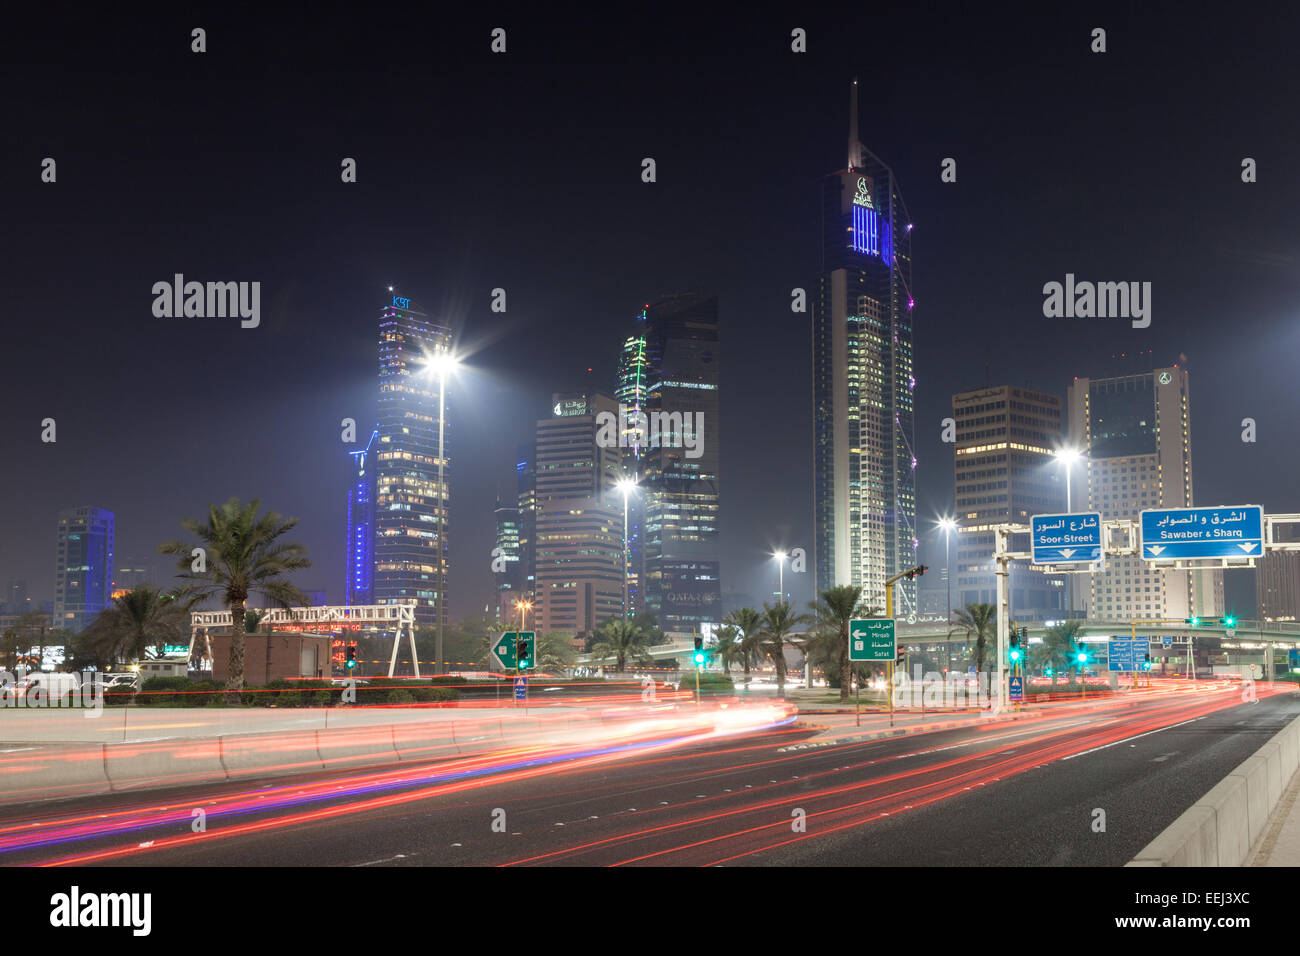 Dans le centre-ville de gratte-ciels Koweït City at night, Koweït, Moyen-Orient Banque D'Images